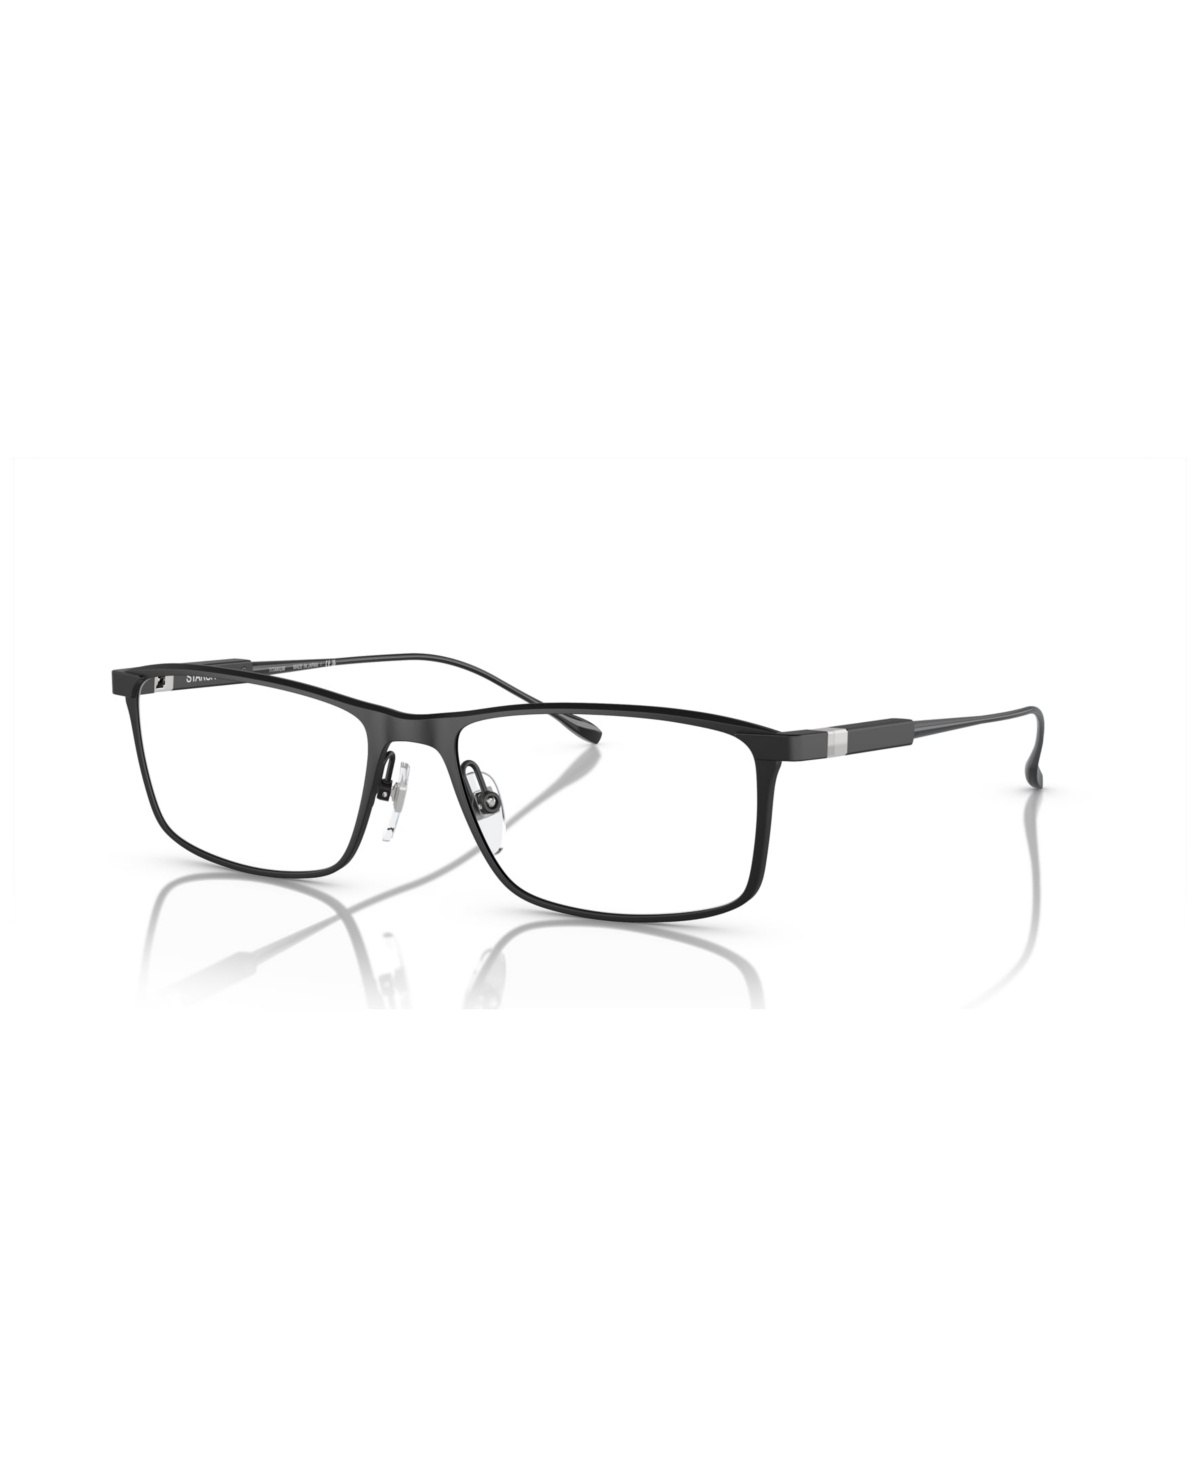 Starck Men's Eyeglasses, SH2082T - Matte Blue